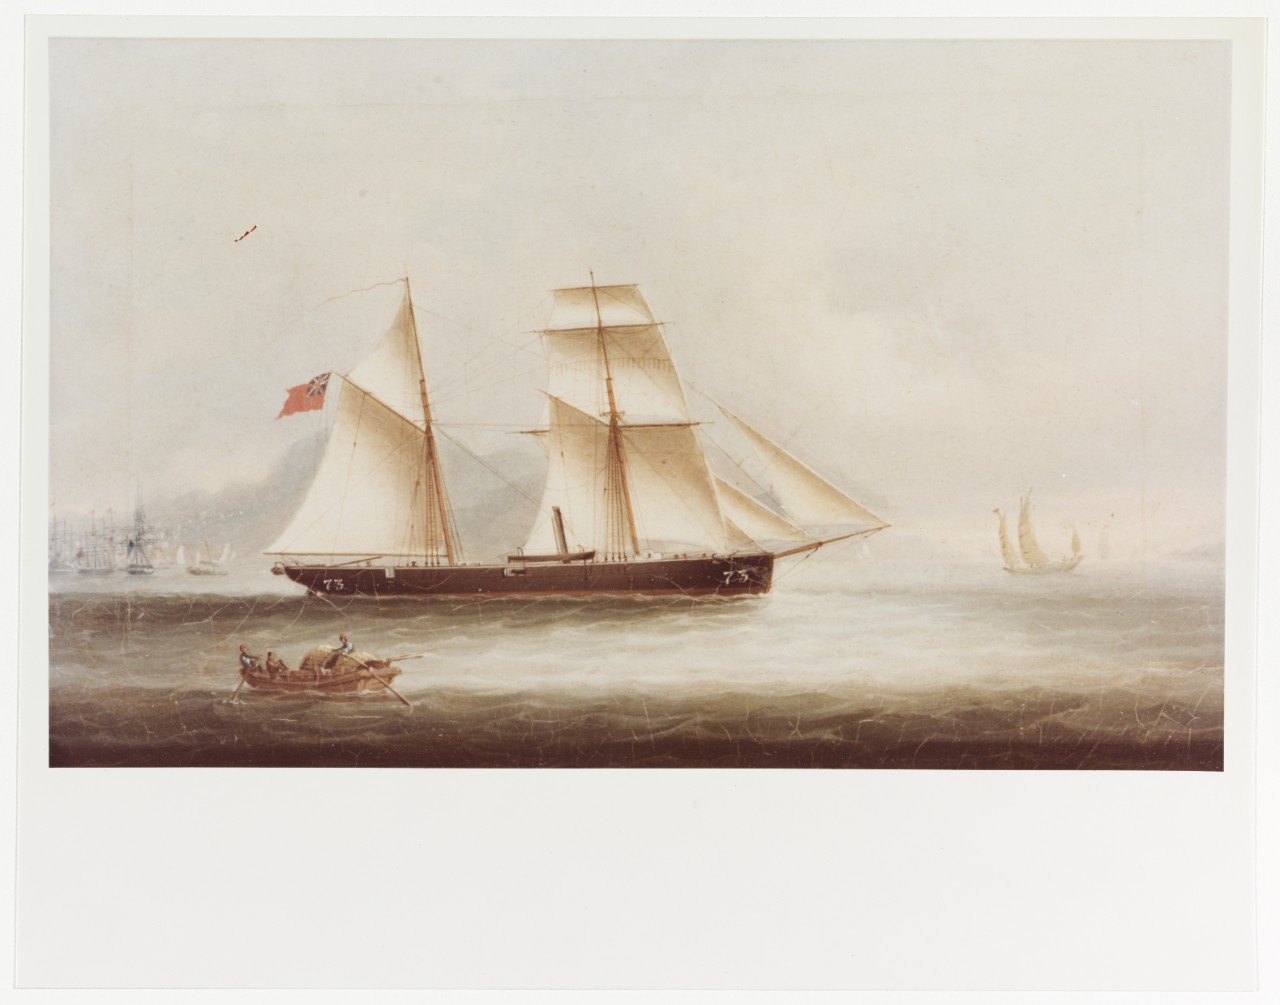 WOODCOCK (British Gunboat, 1856-71)